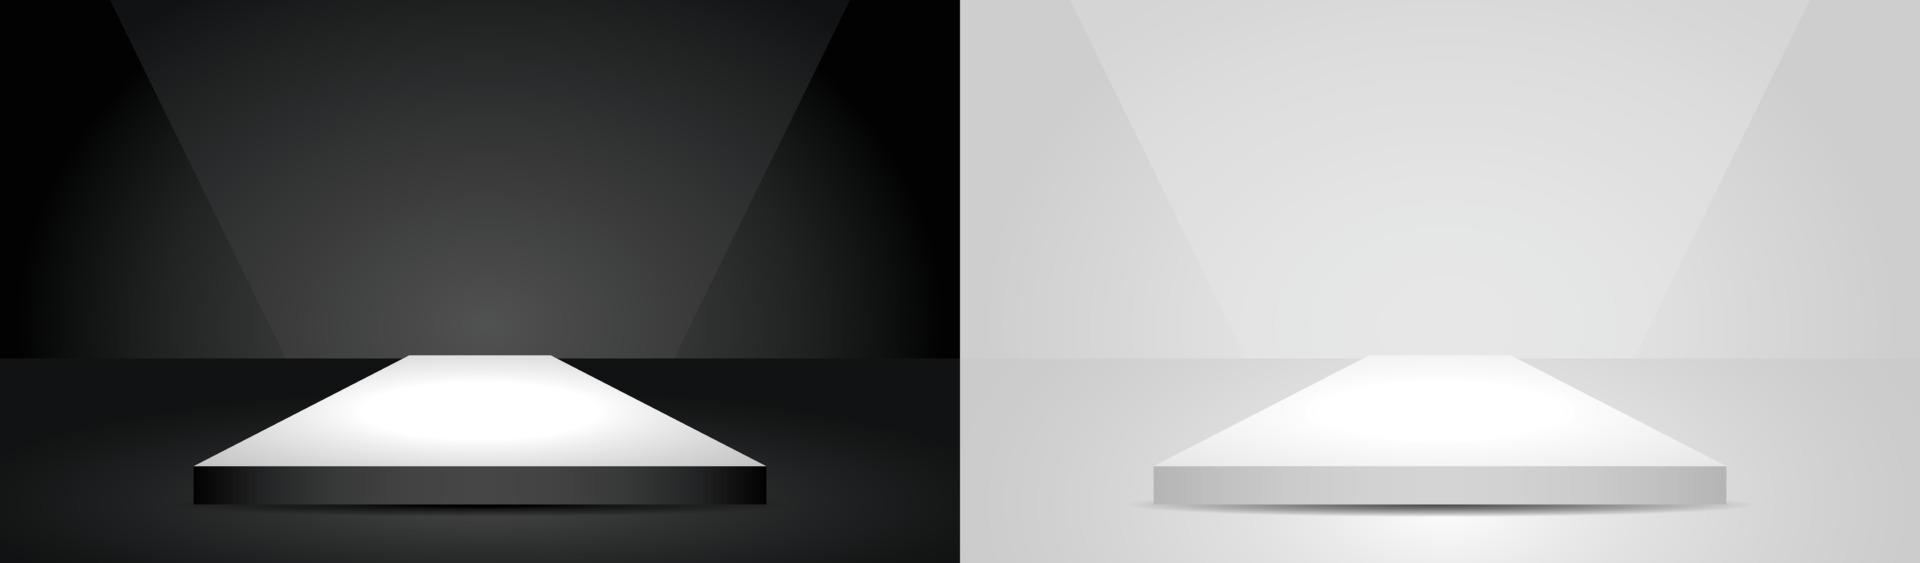 podium carré de lumière minimale noir et blanc afficher vecteur d'illustration 3d pour mettre votre objet